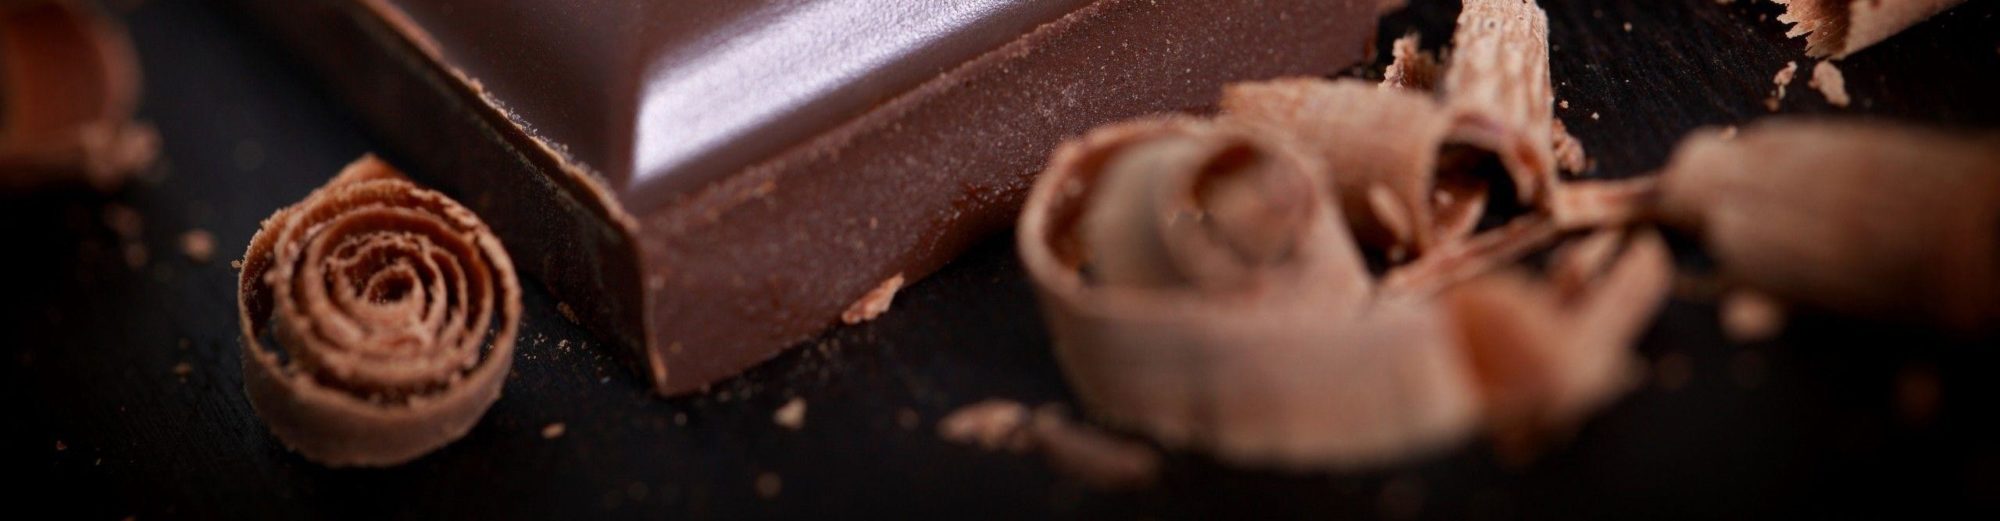 Шоколад и шоколадные заметки